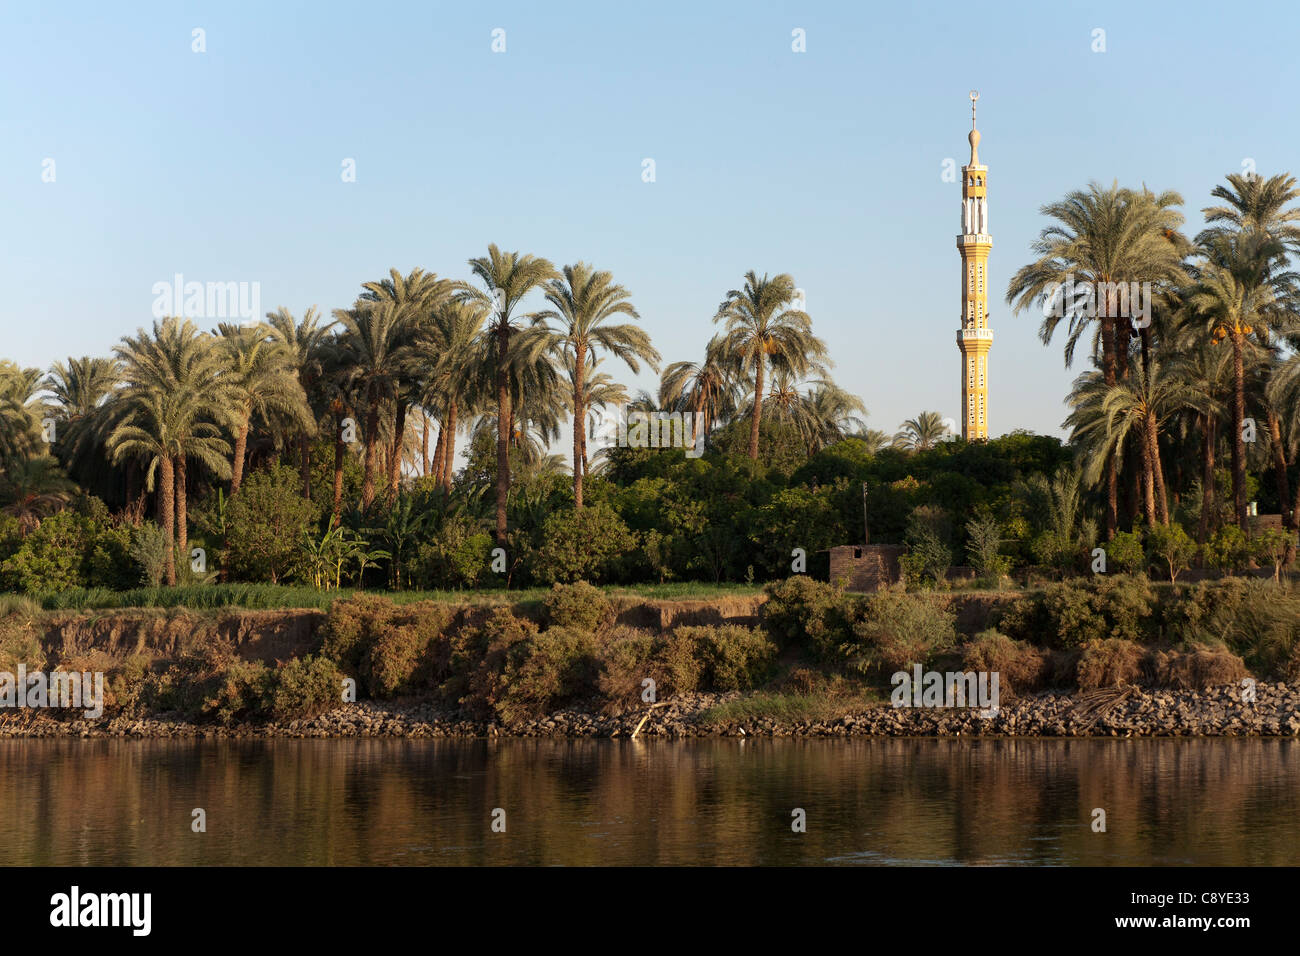 Una sezione del fiume Nilo banca con una striscia di acqua nella parte anteriore, banca arbusto, linea di palme e un minareto della moschea, Egitto Africa Foto Stock